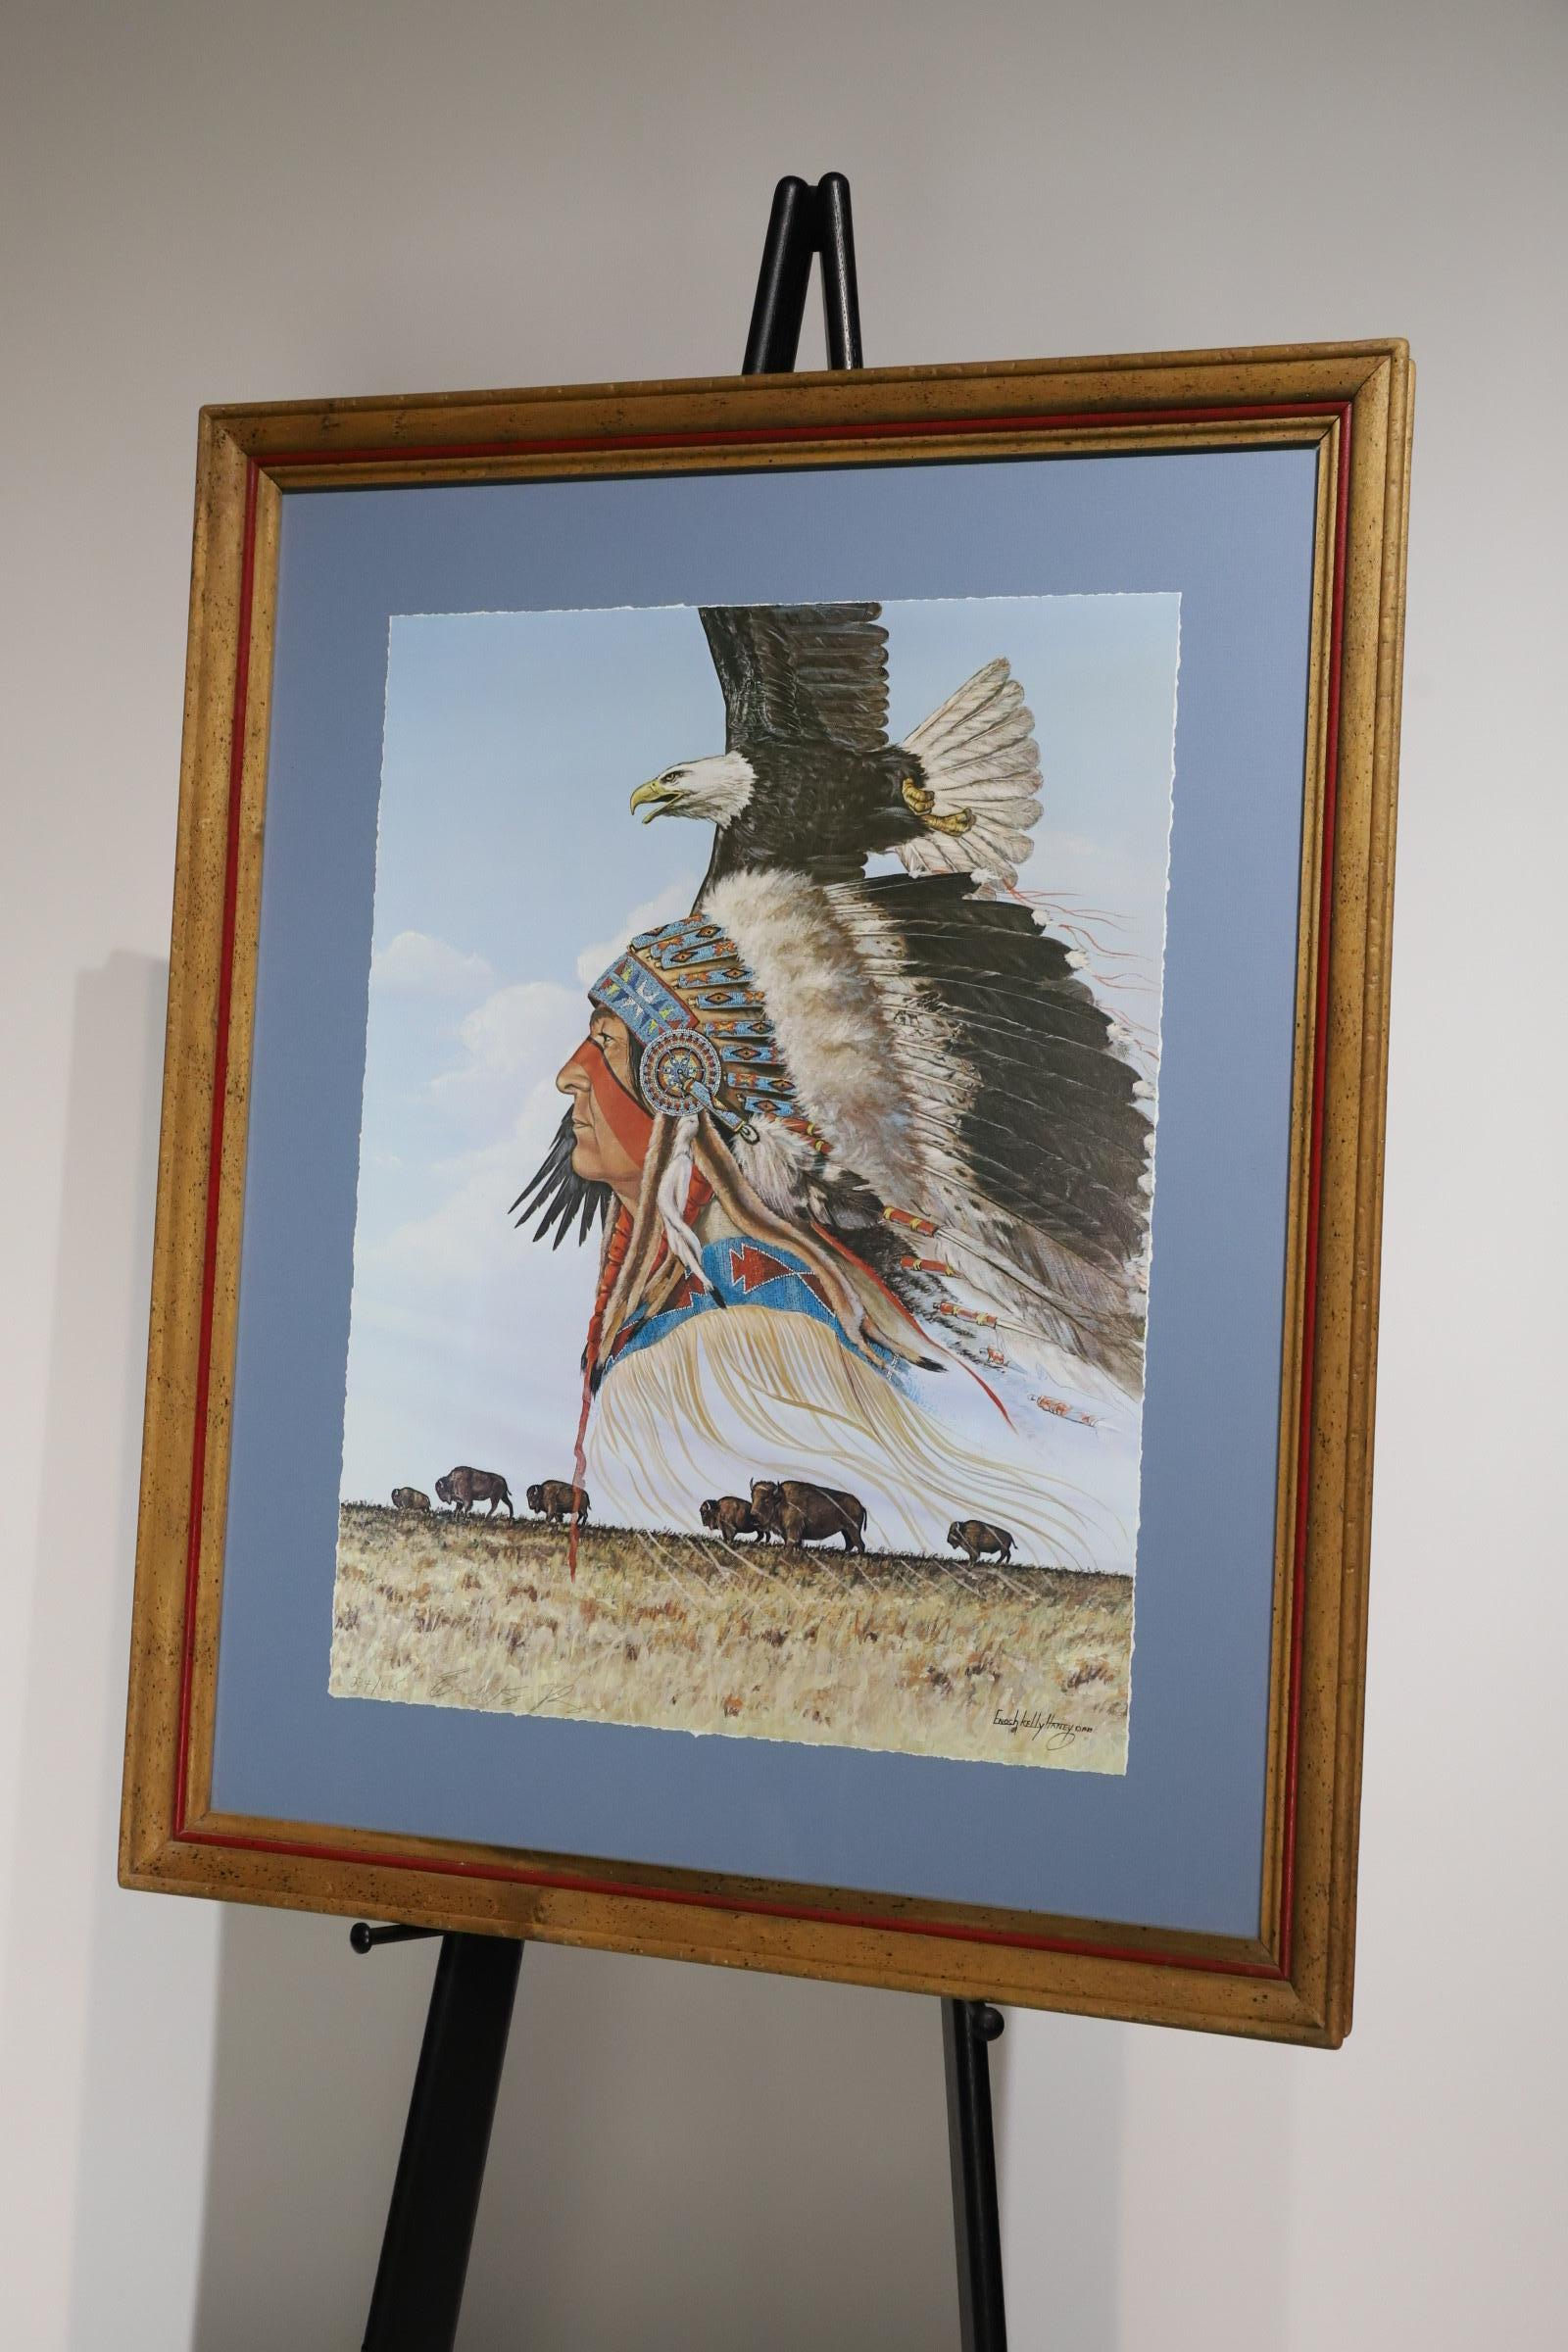 Der gerahmte, signierte Druck von Enoch Kelly Haney fängt die Essenz der Kunst der amerikanischen Ureinwohner ein und verbindet traditionelle Themen mit zeitgenössischem Ausdruck. Das Werk zeigt Haney's Meisterschaft im Umgang mit komplizierten